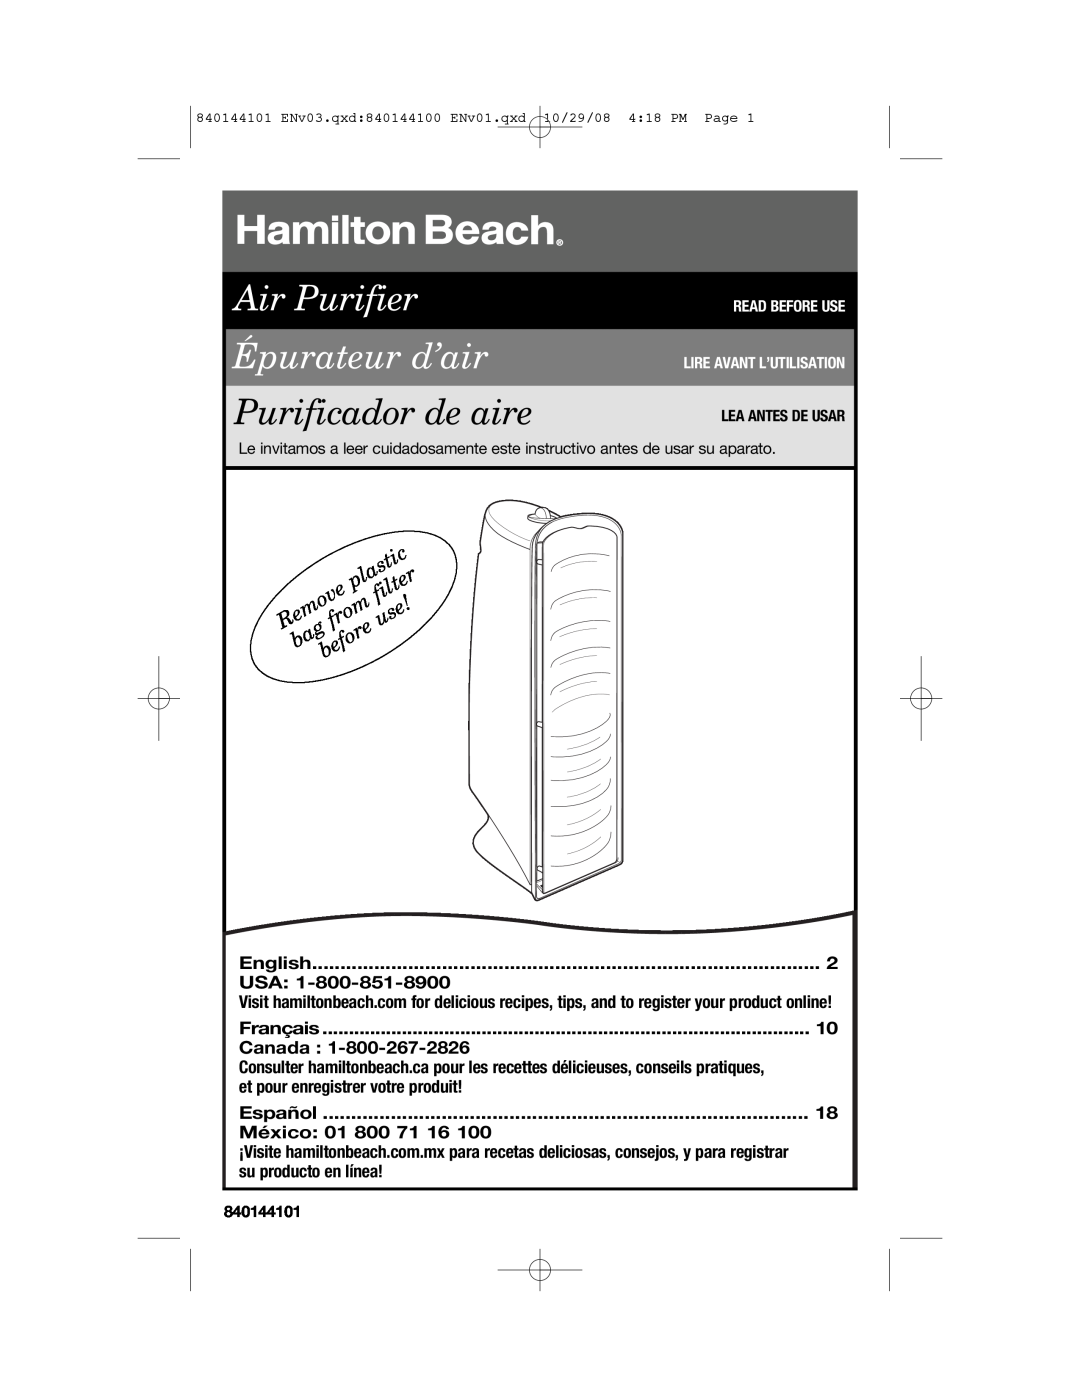 Hamilton Beach 840144101 manual English, Usa, Français, Canada, et pour enregistrer votre produit, Español, México, filter 